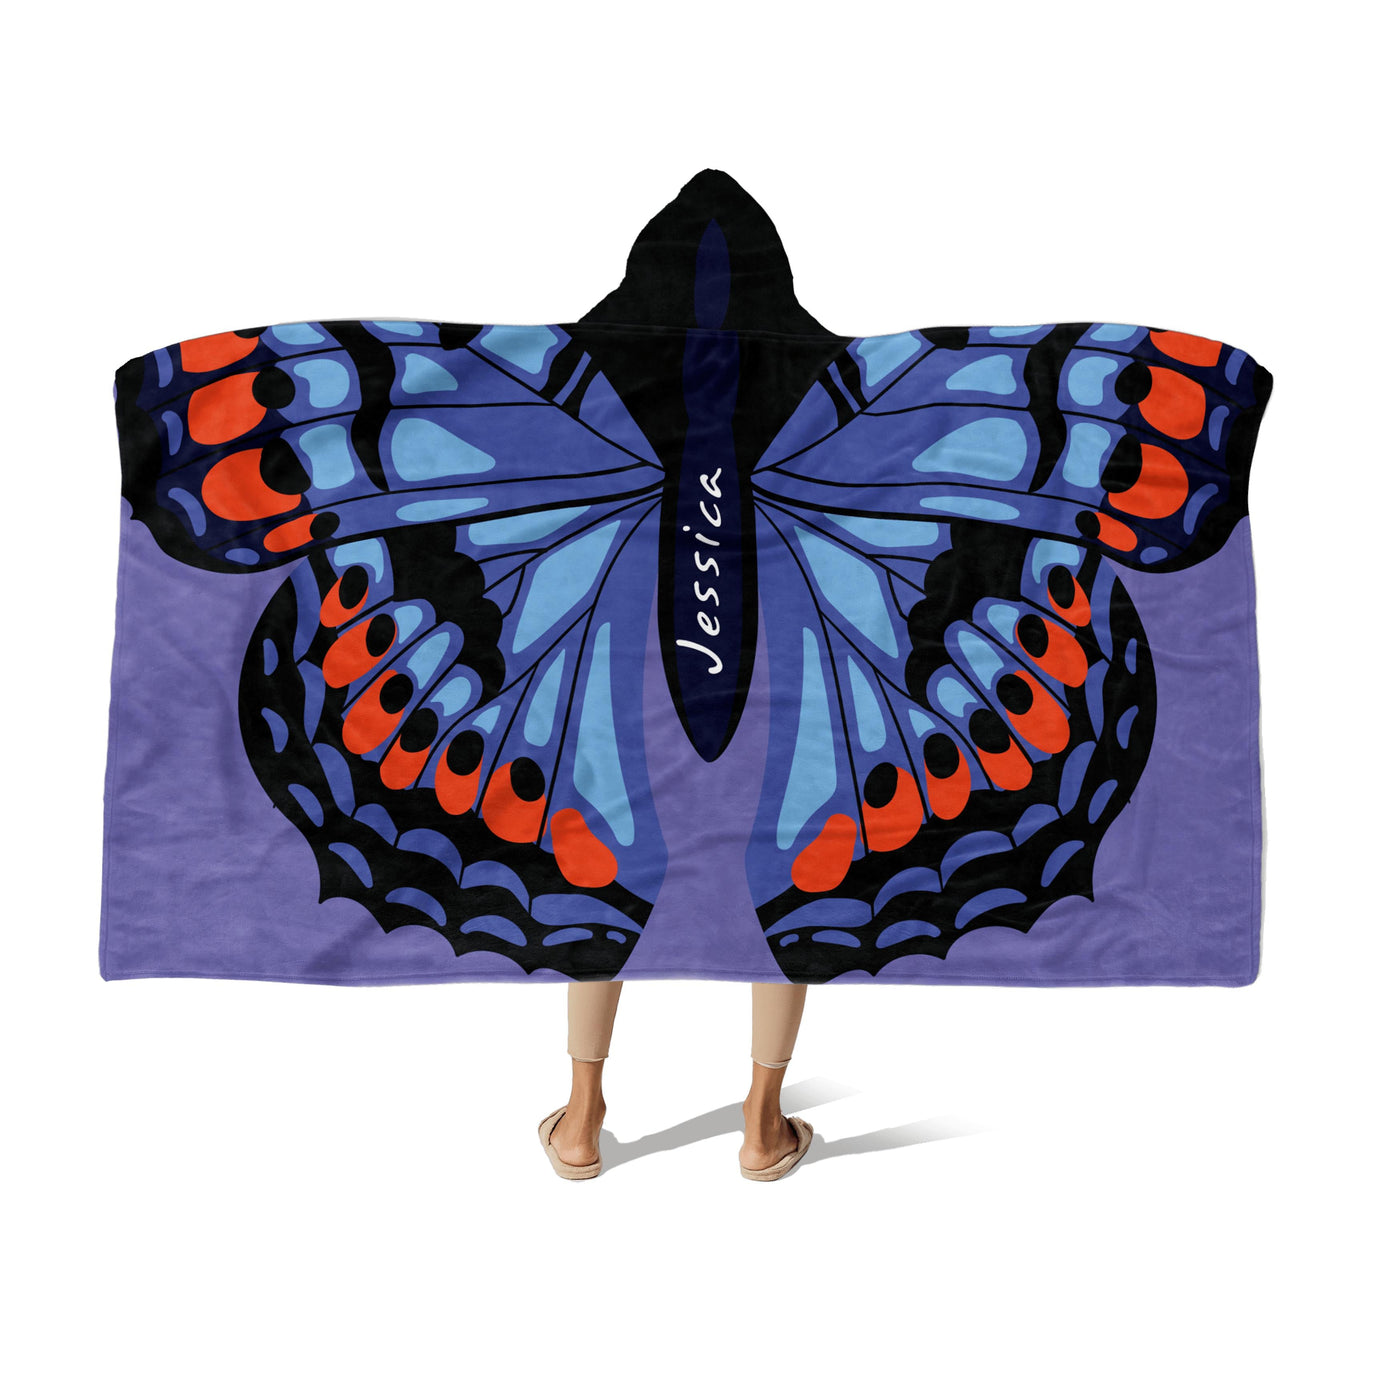 Hooded Fleece Blanket: Butterfly Wings Apparel & Accessories Sam + Zoey  Sam + Zoey